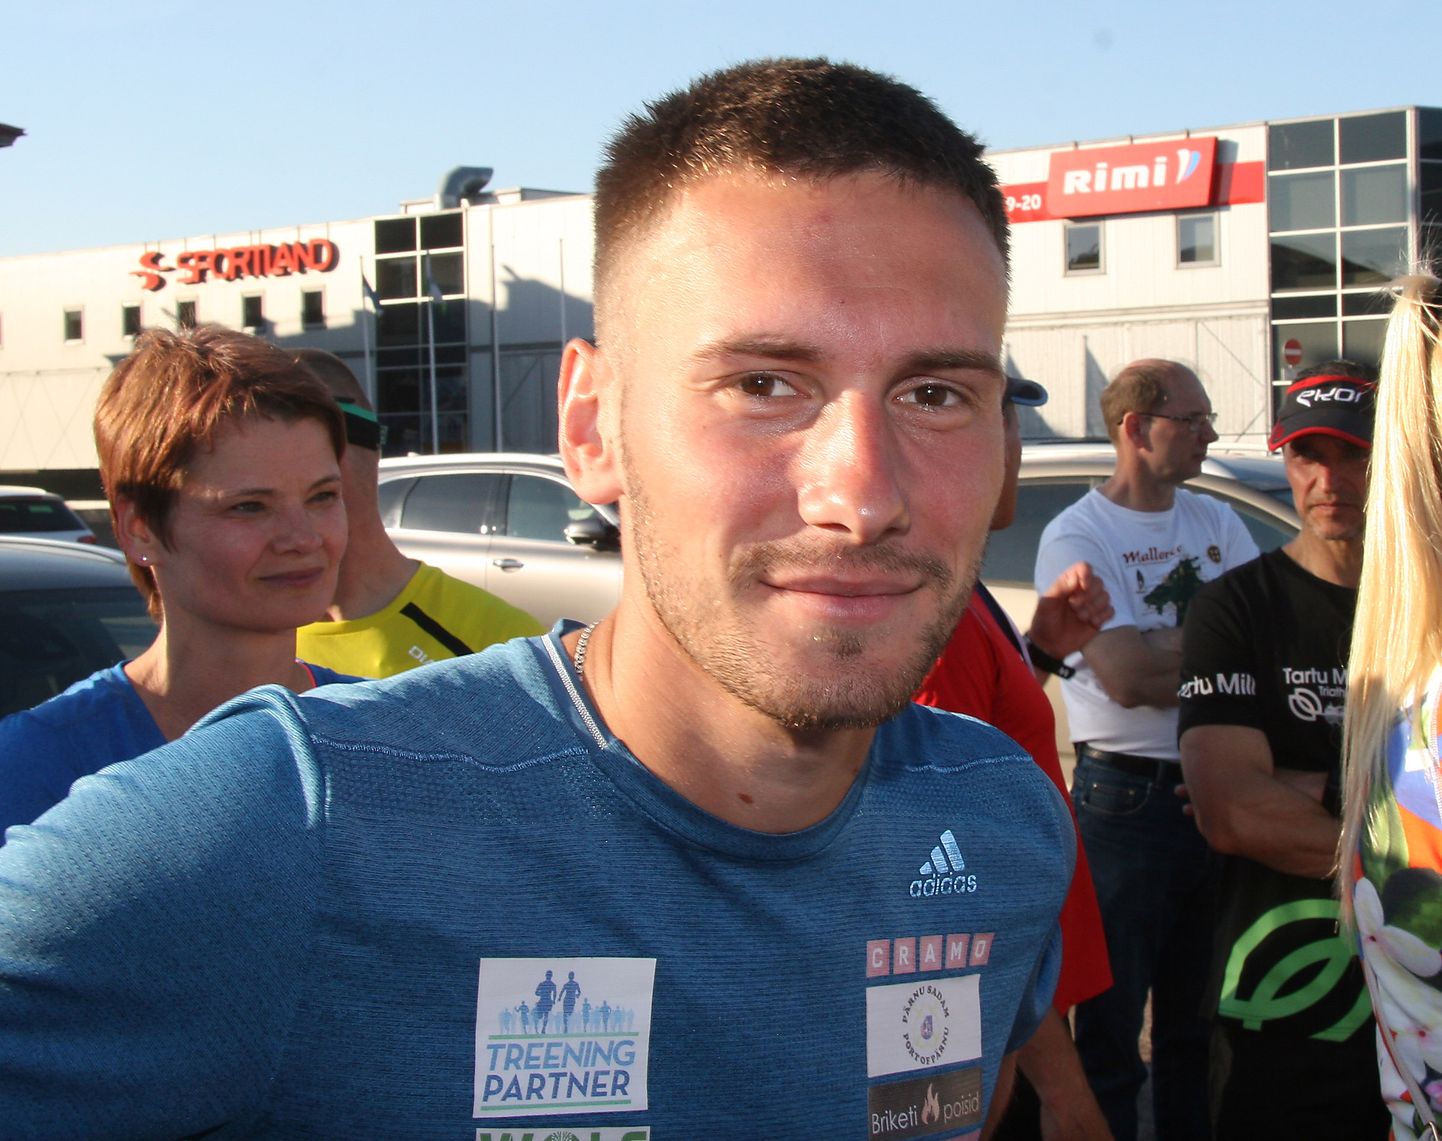 Победитель многих ида-вируских забегов Дмитрий Аристов после нескольких лет паузы показал крепкий результат и на нынешнем Таллиннском марафоне.